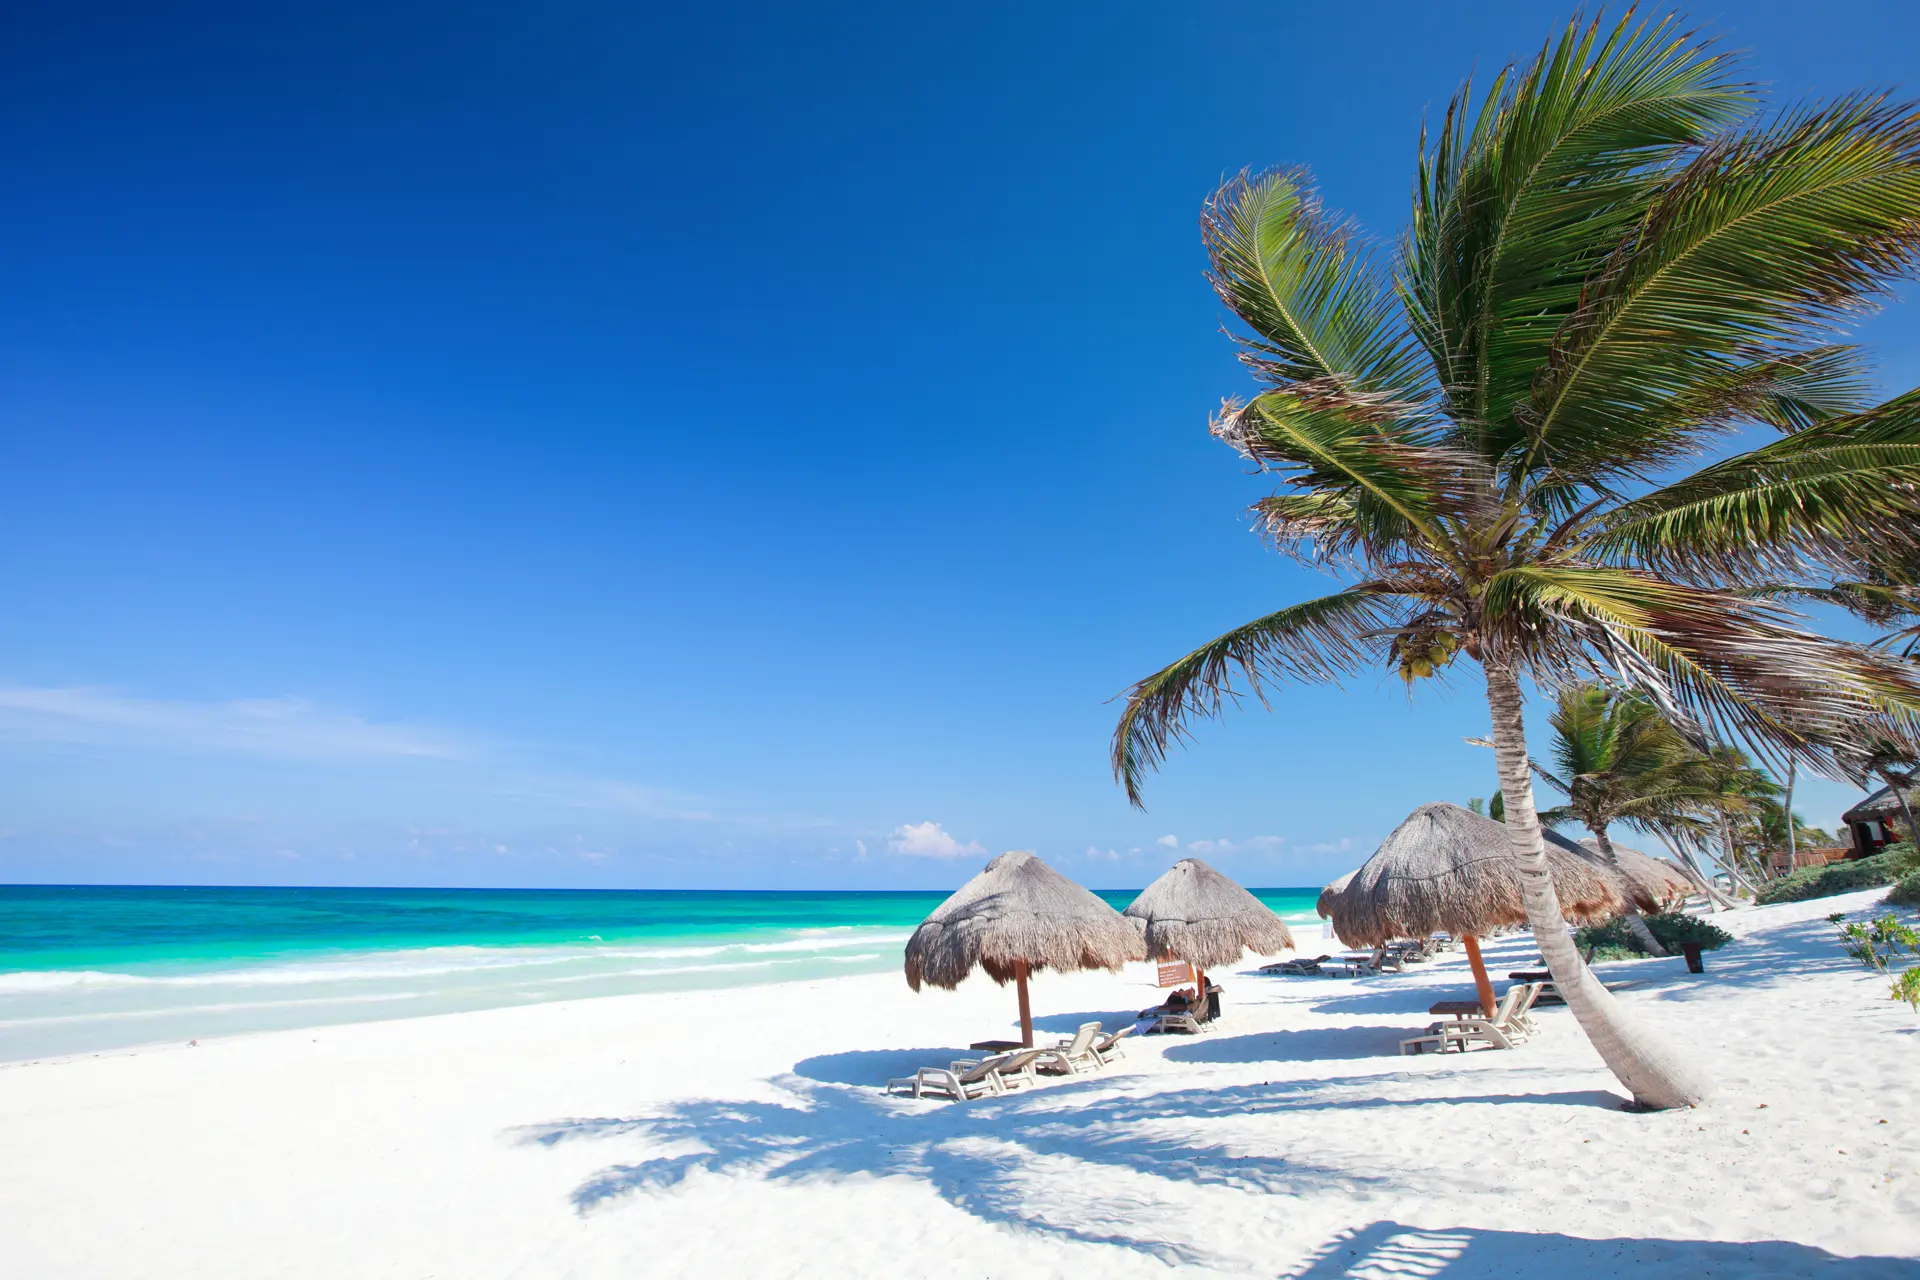 MEXICOS BEDSTE STRAND - Stranden i Tulum hører til blandt de bedste i Mexico. Her tilbringer I nogle afslappende dage efter rundrejsen